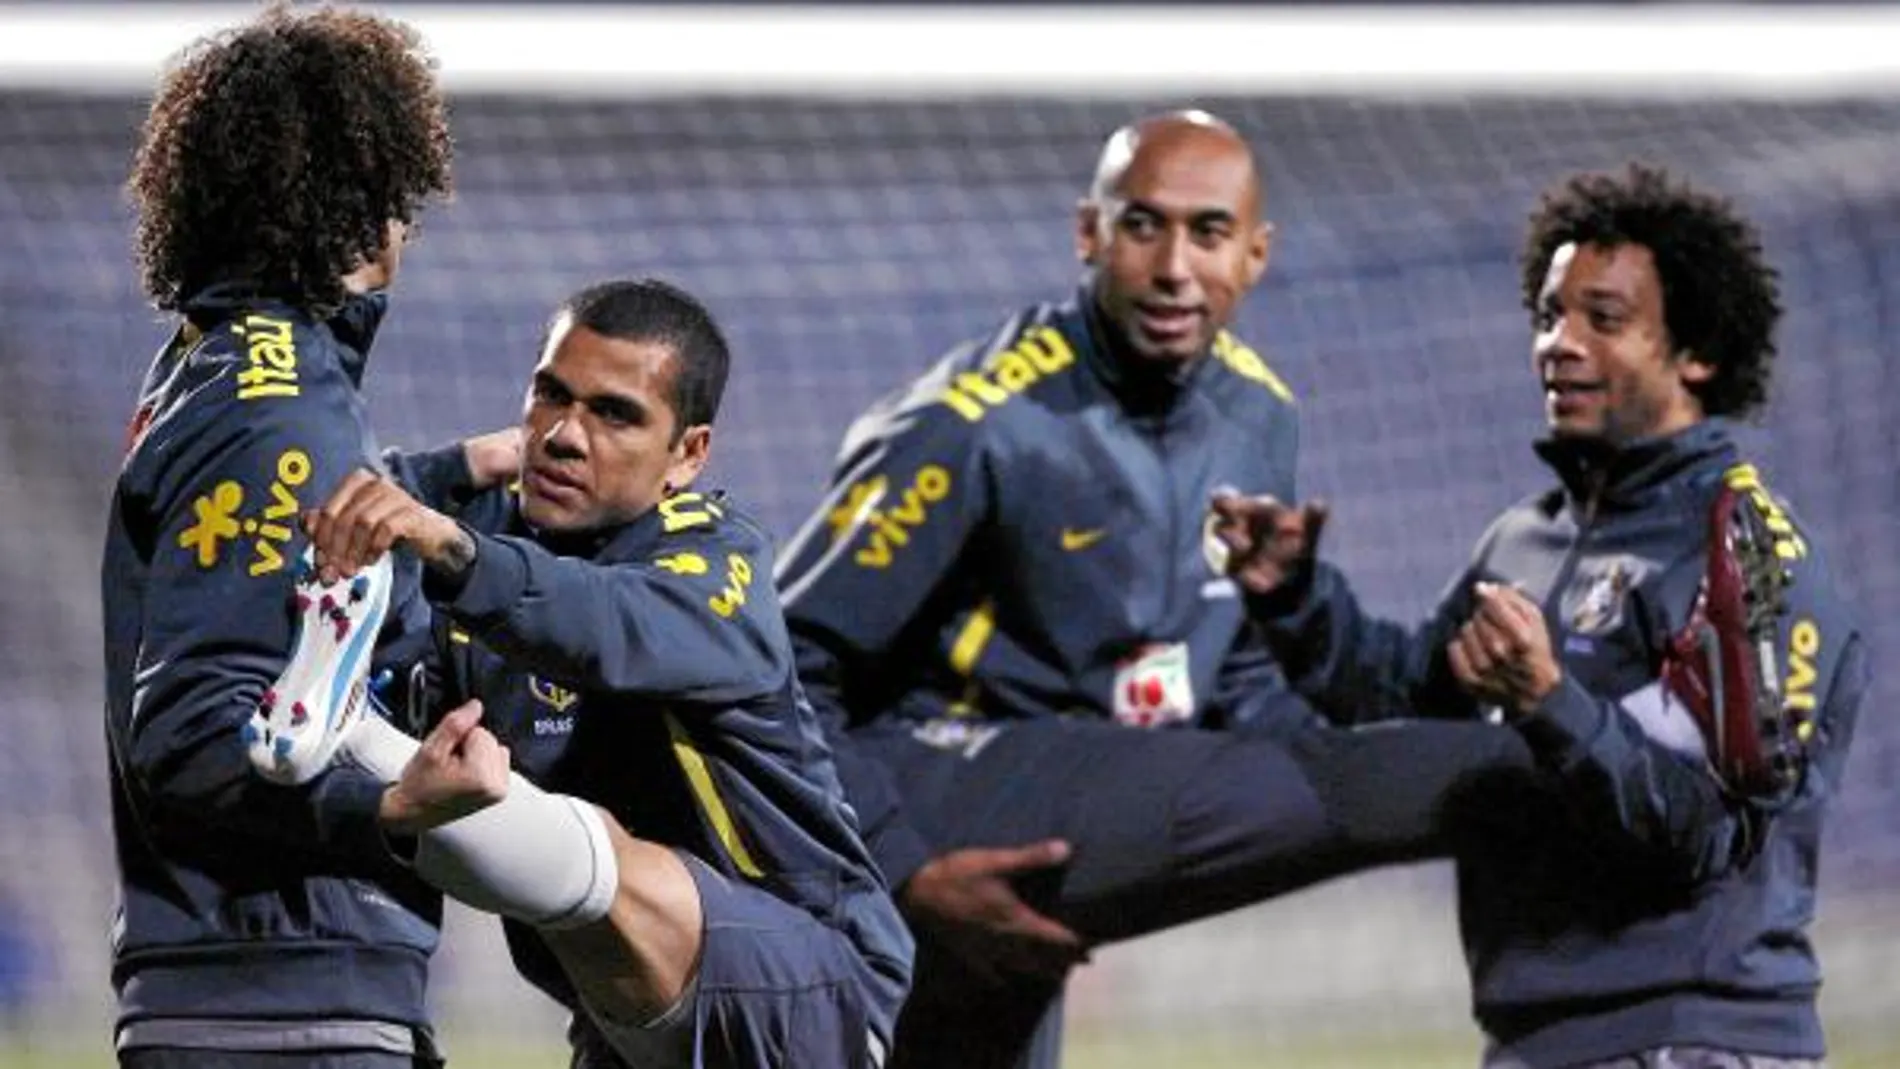 Marcelo, junto a sus compañeros de la selección brasileña Alves y Luisao, en el entrenamiento del jueves